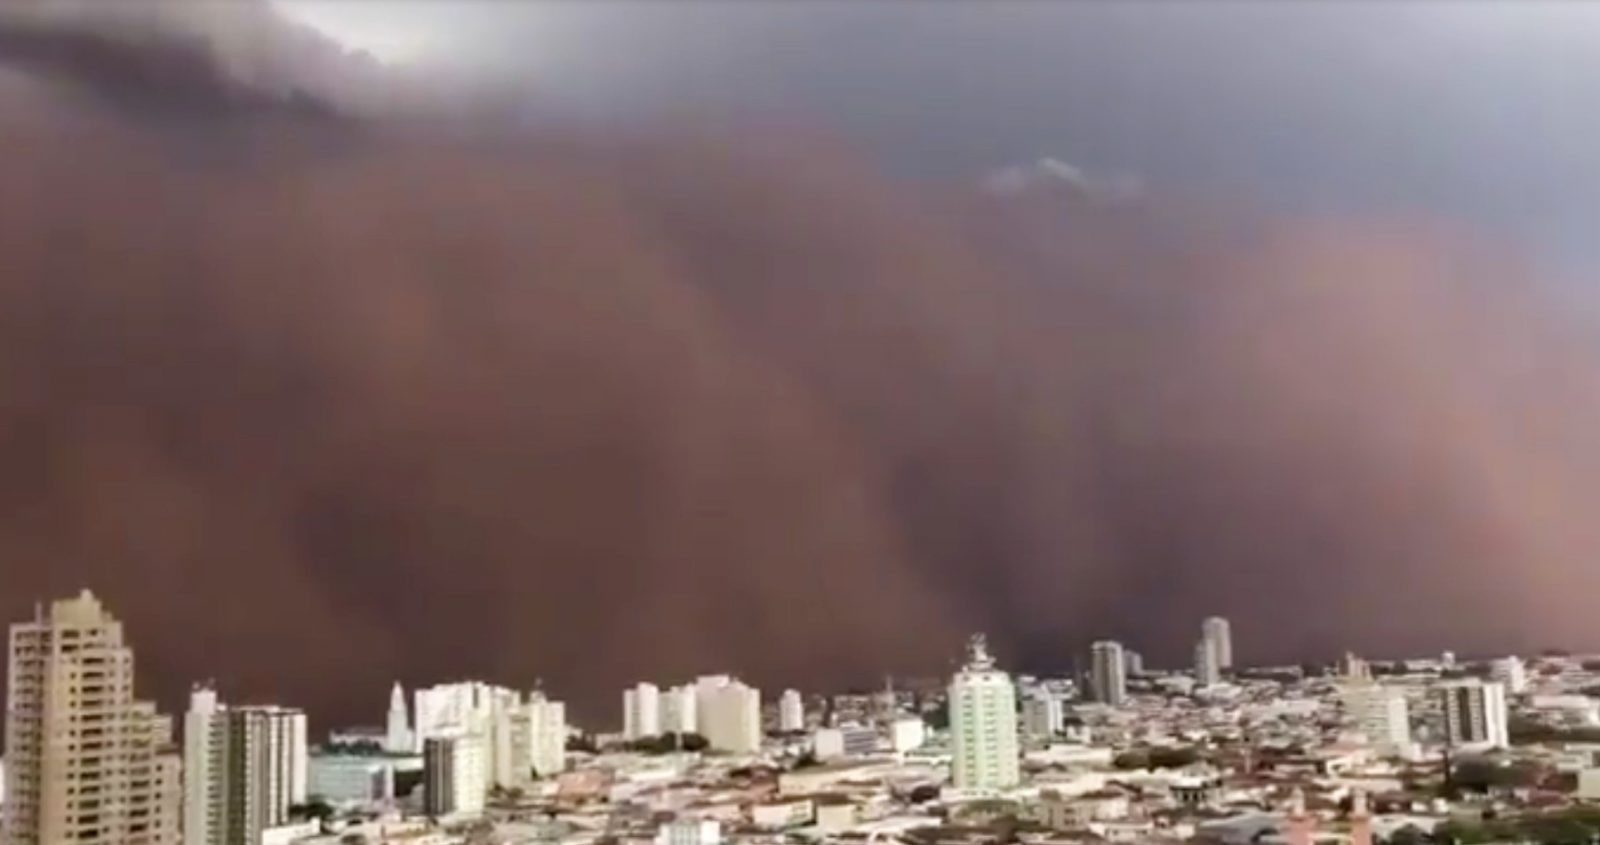 Wielka chmura pyłu i piasku zasypała Sao Paulo. Takich burz będzie więcej? [WIDEO]